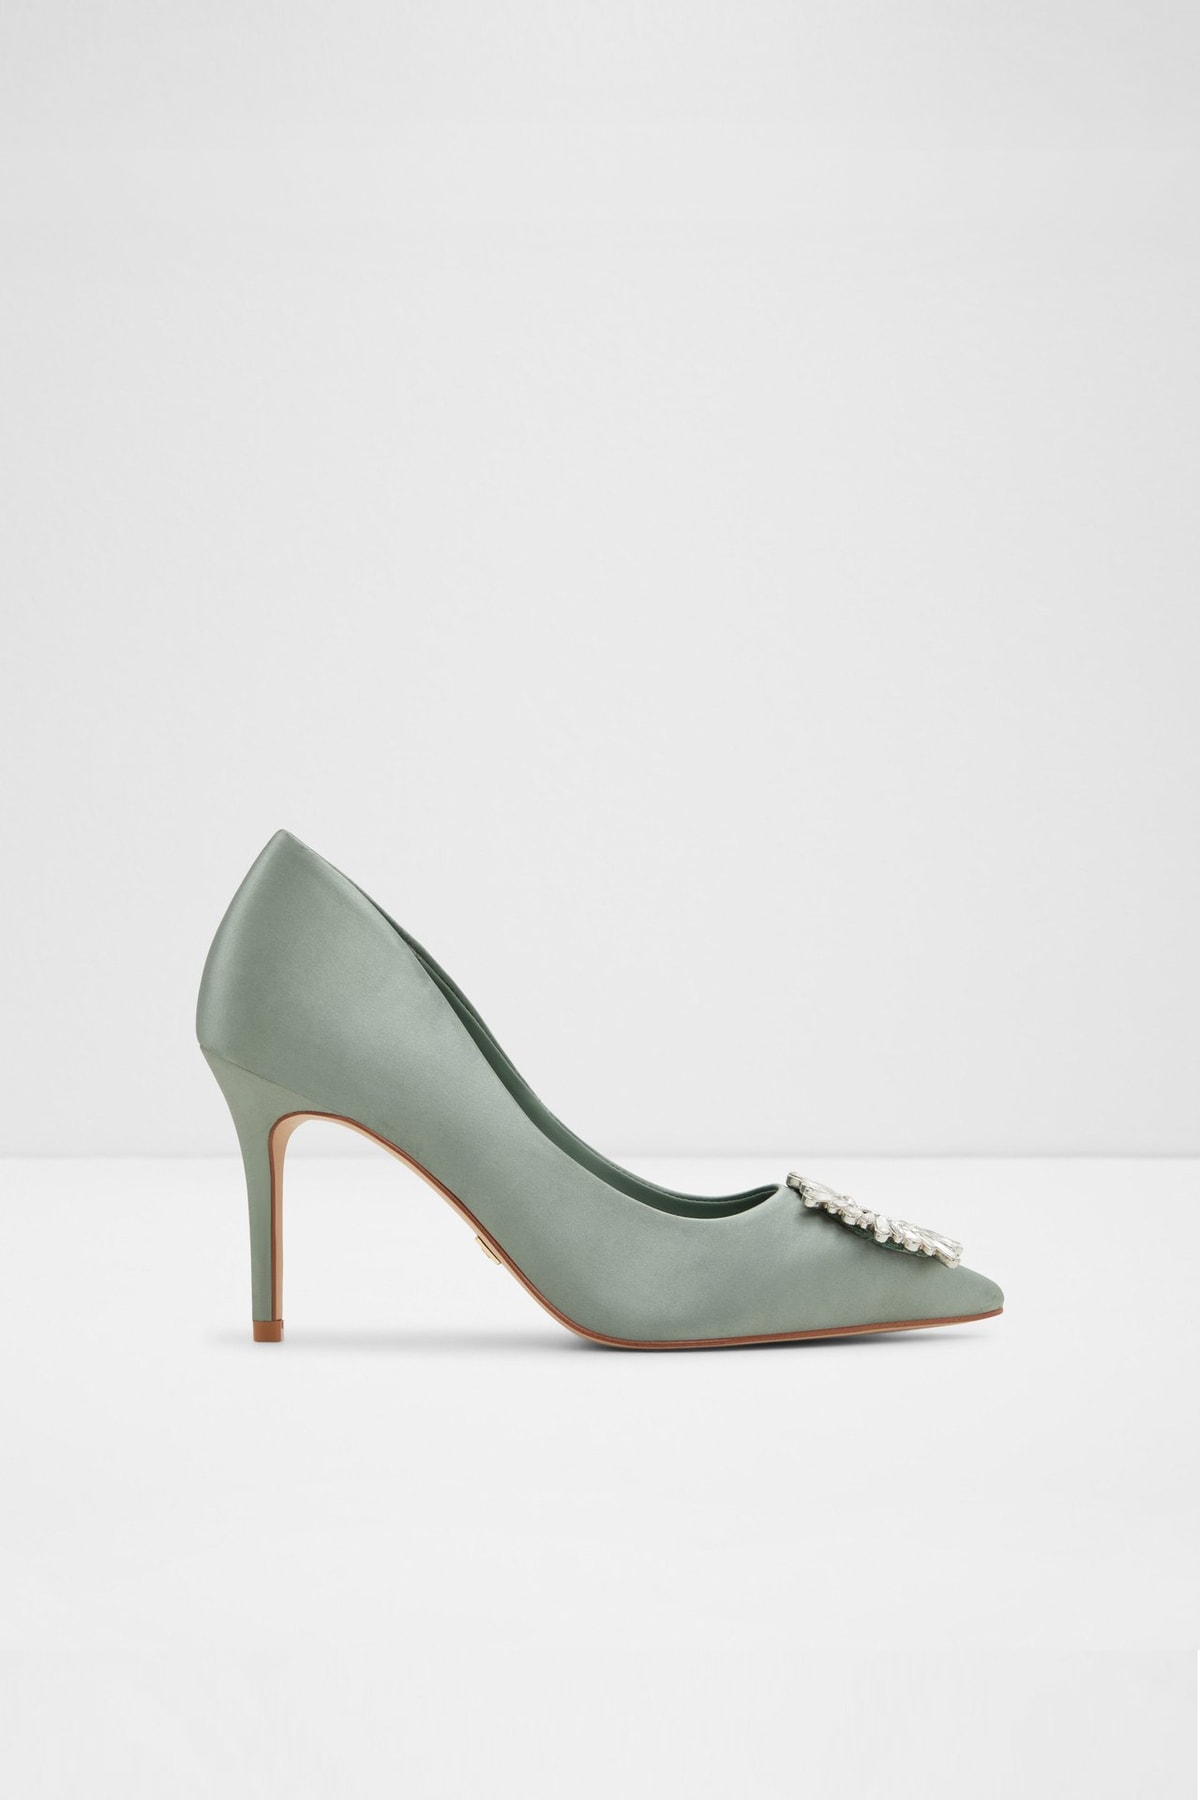 Aldo Platıne - Yeşil Kadın Topuklu Ayakkabı